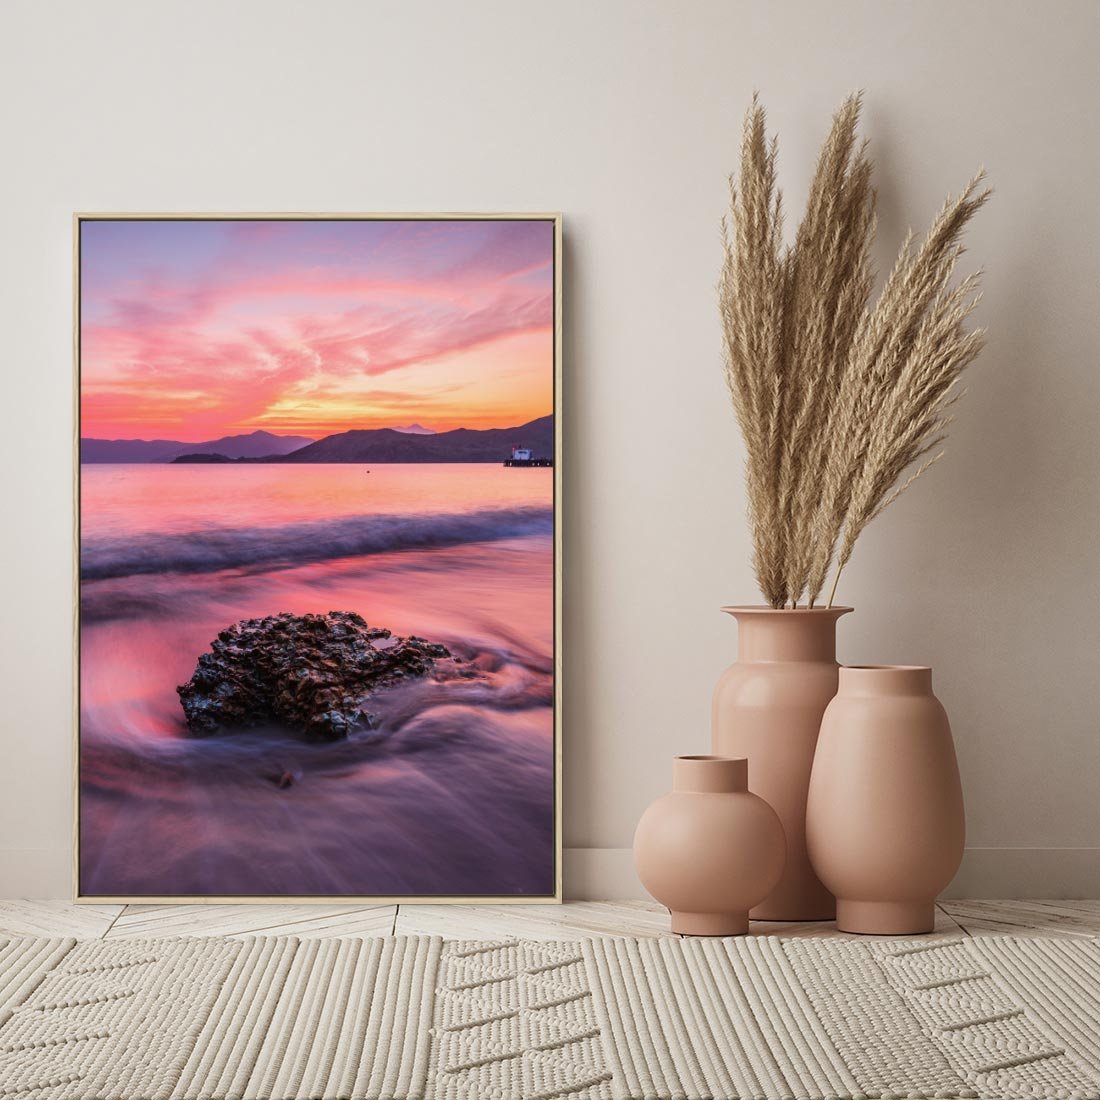 Obraz w ramie 50x70 - Zaklęty Zachód - magiczny zachód słońca, fioletowe - rama drewno